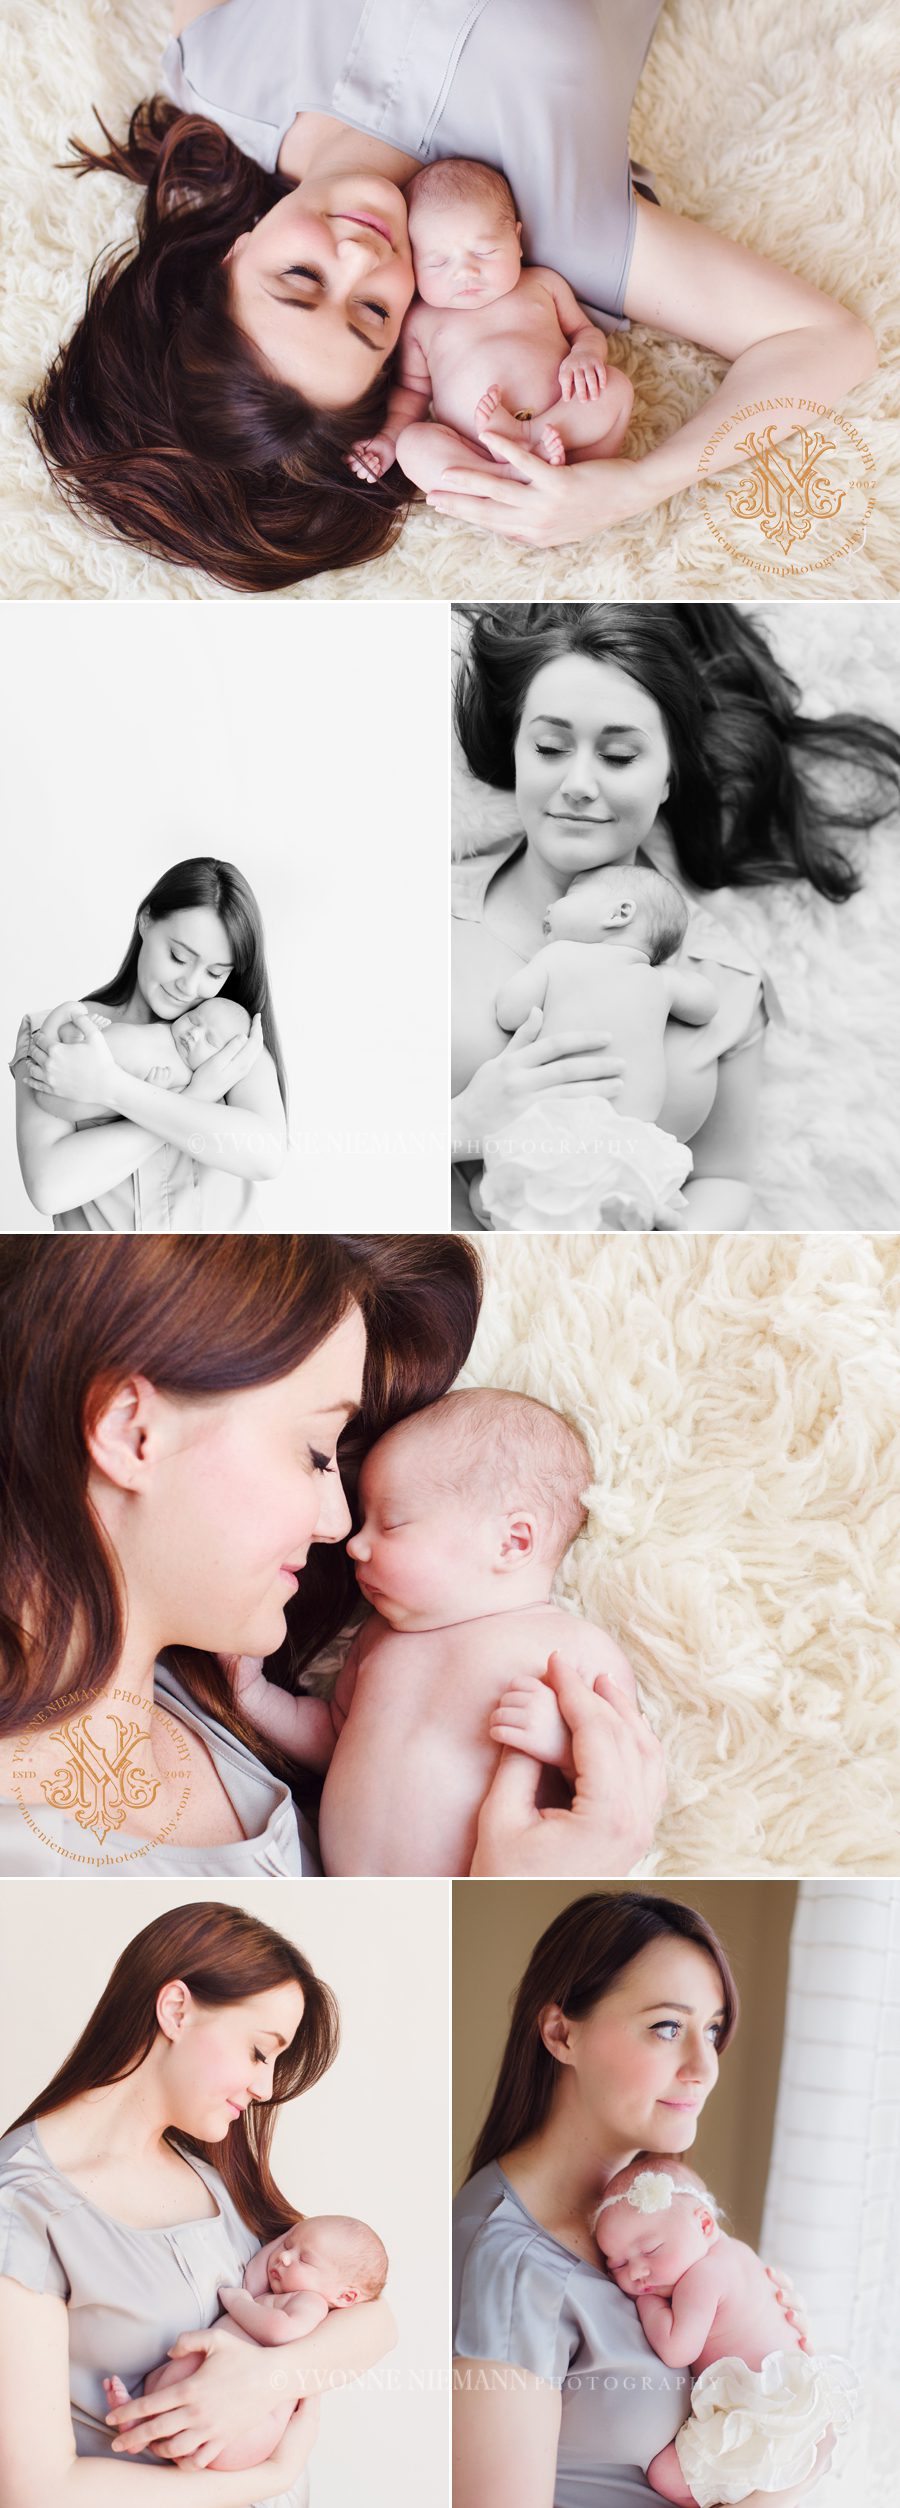 authentic mother daughter newborn portraits taken by Yvonne Niemann Photography in Watkinsville, GA.